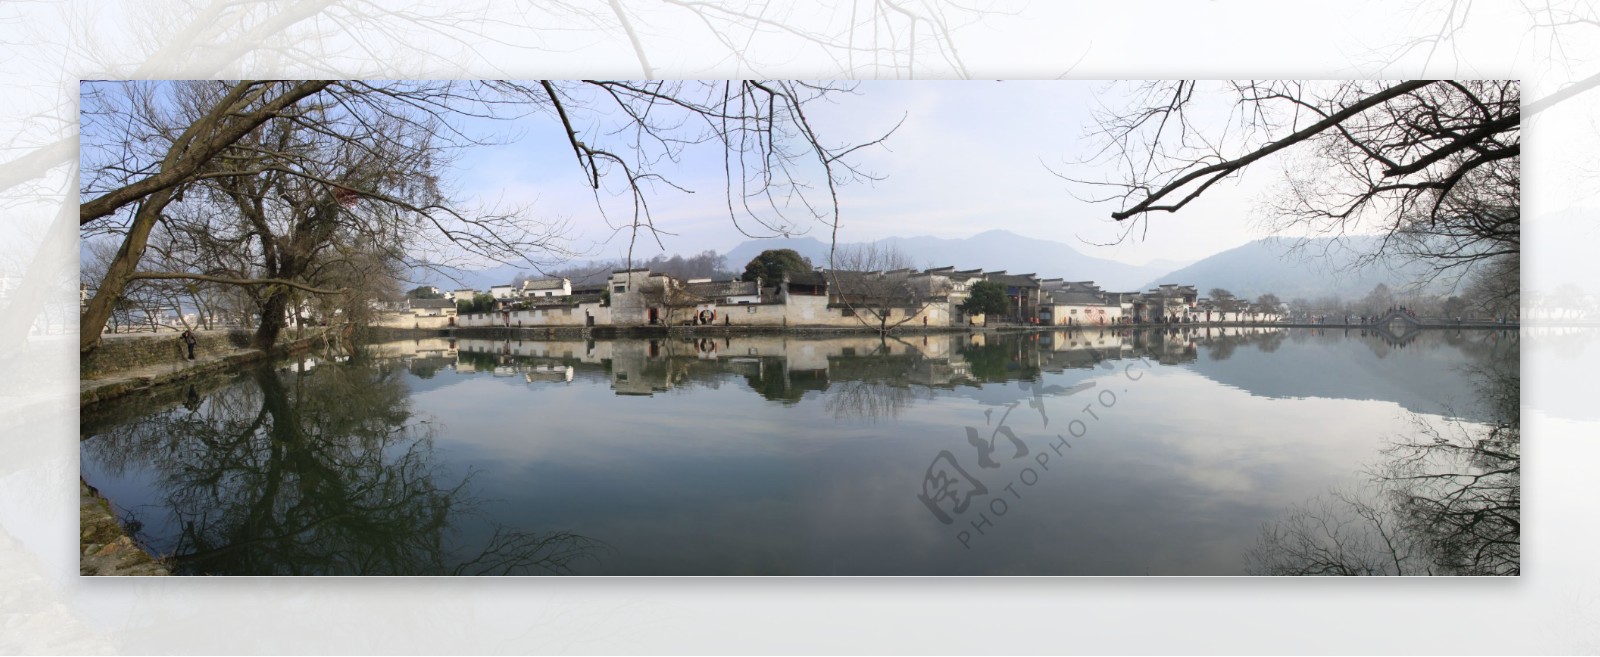 自拍的高清宏村民居风景全景图片